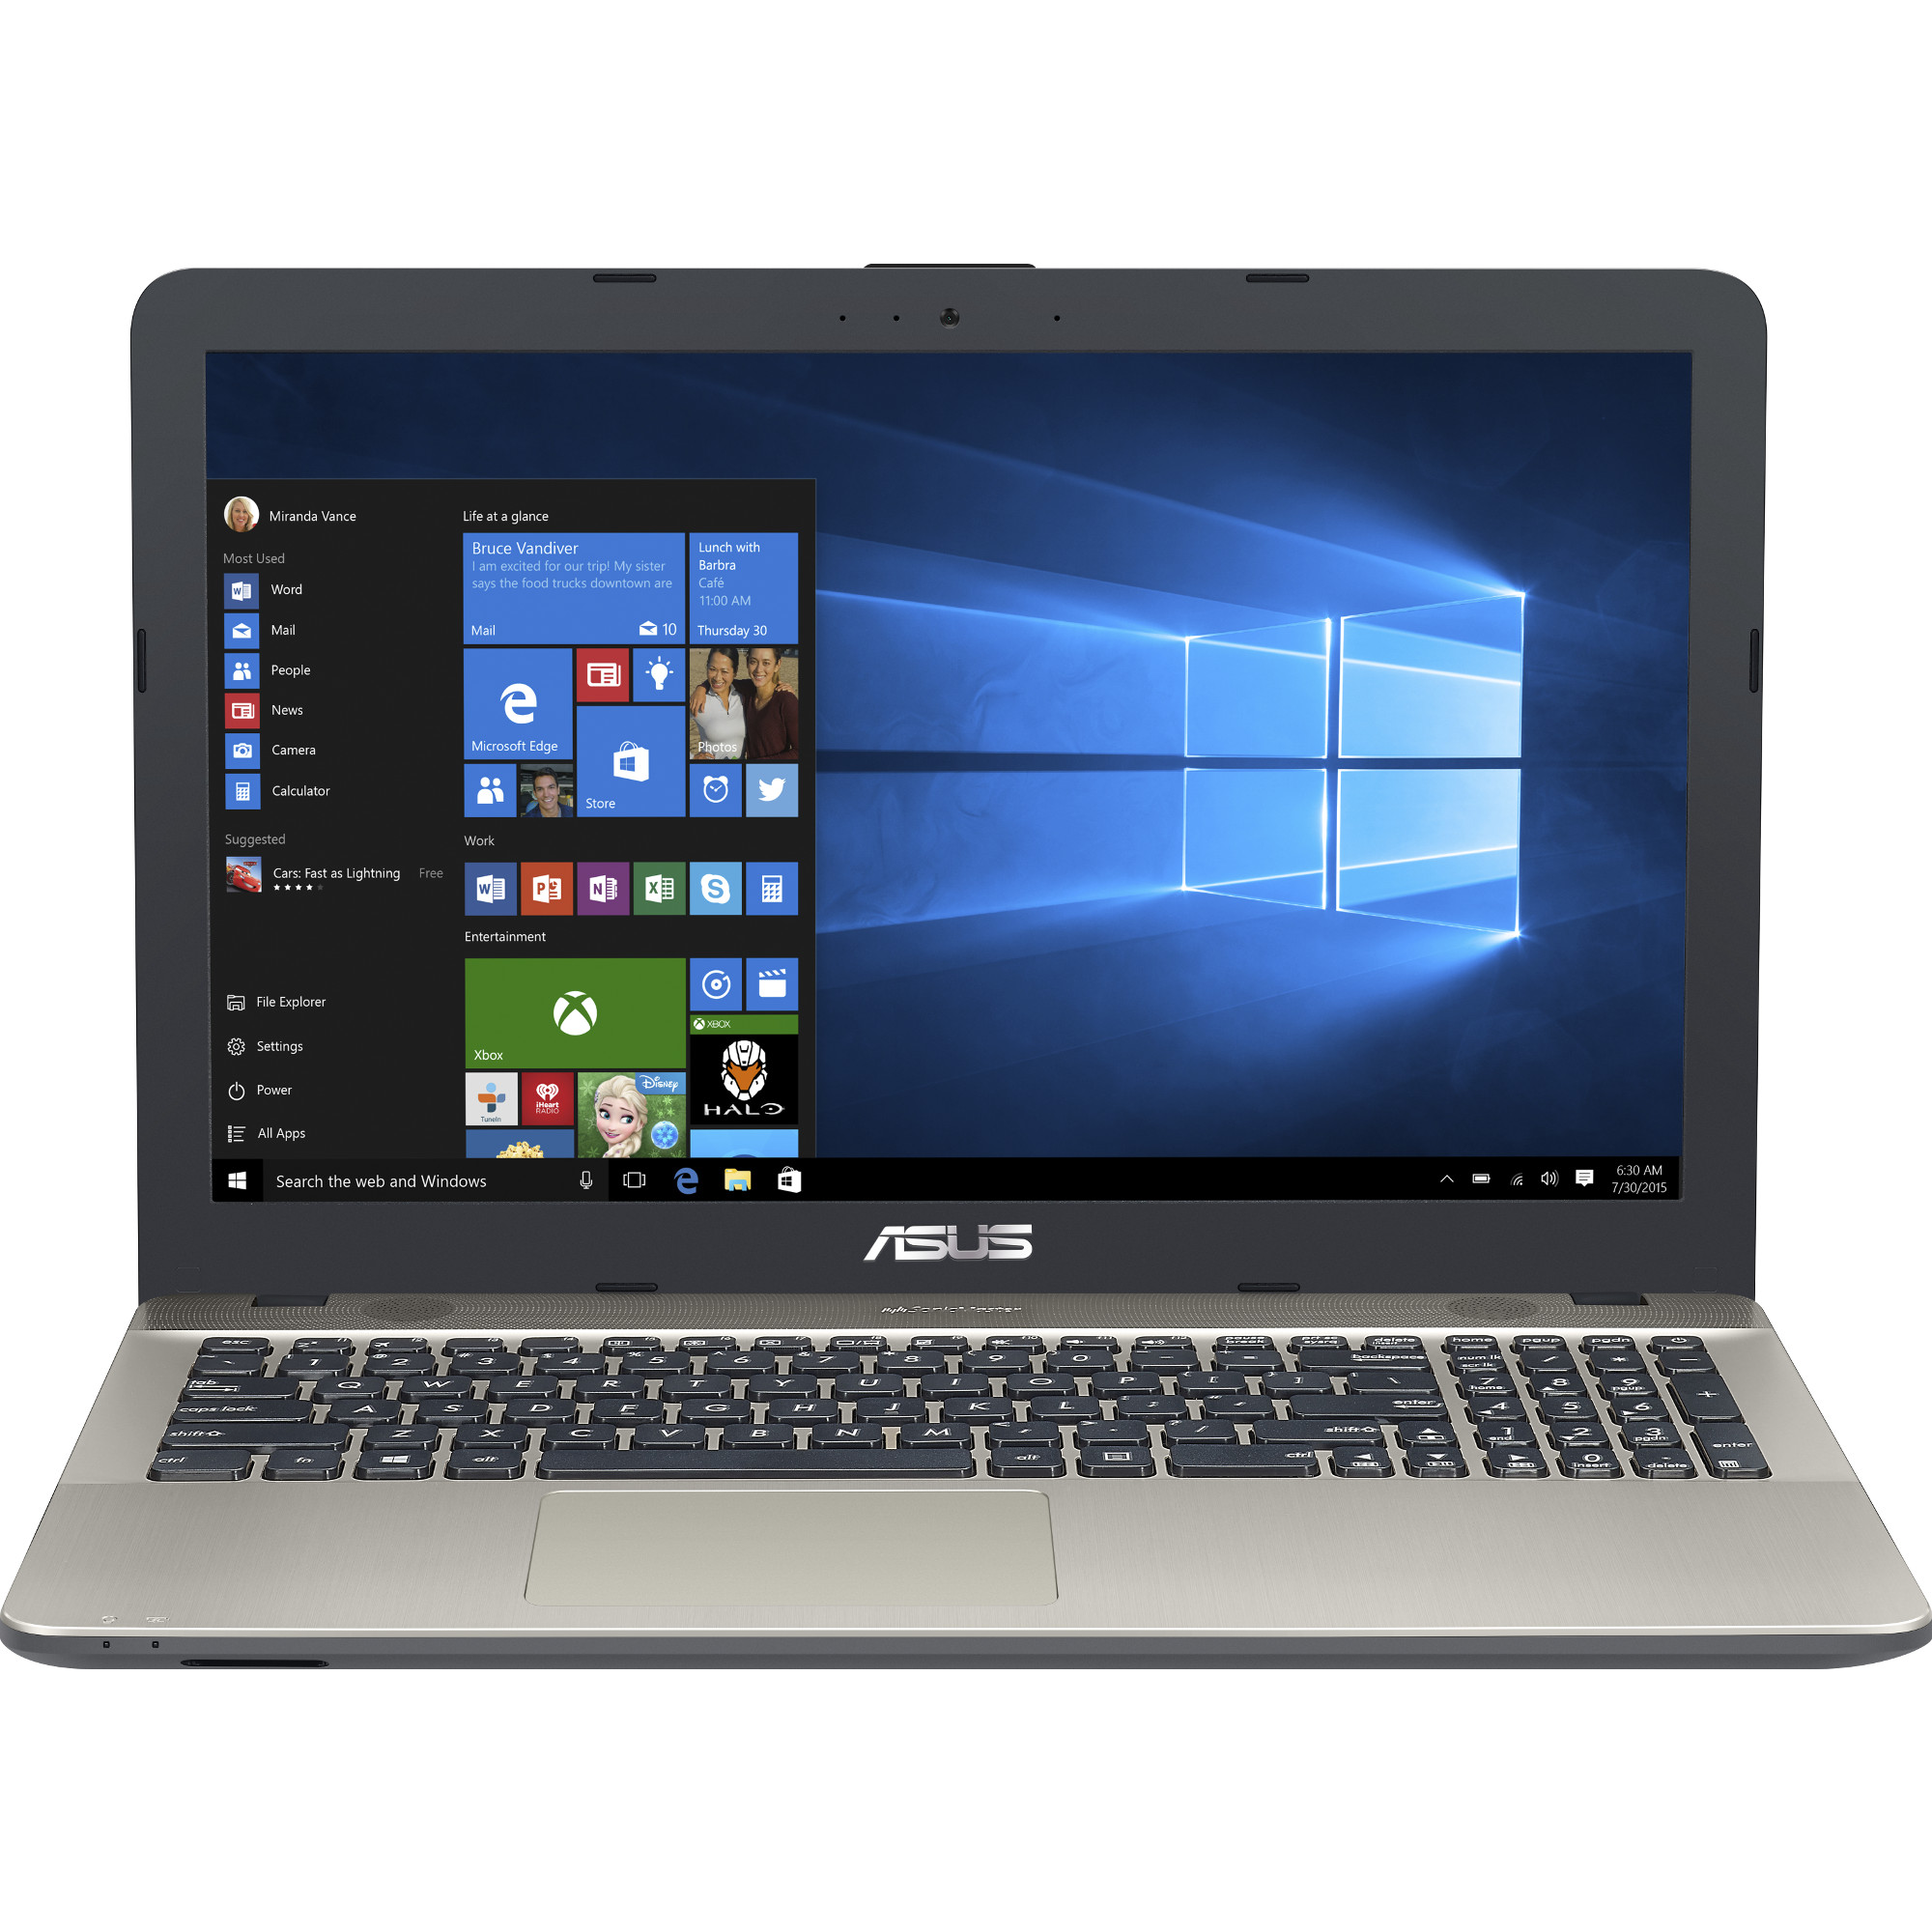 Laptop ASUS X541UJ, Intel Core i3-6006U, 4GB DDR4, HDD 500GB, nVidia GeForce 920M 2GB, Windows 10